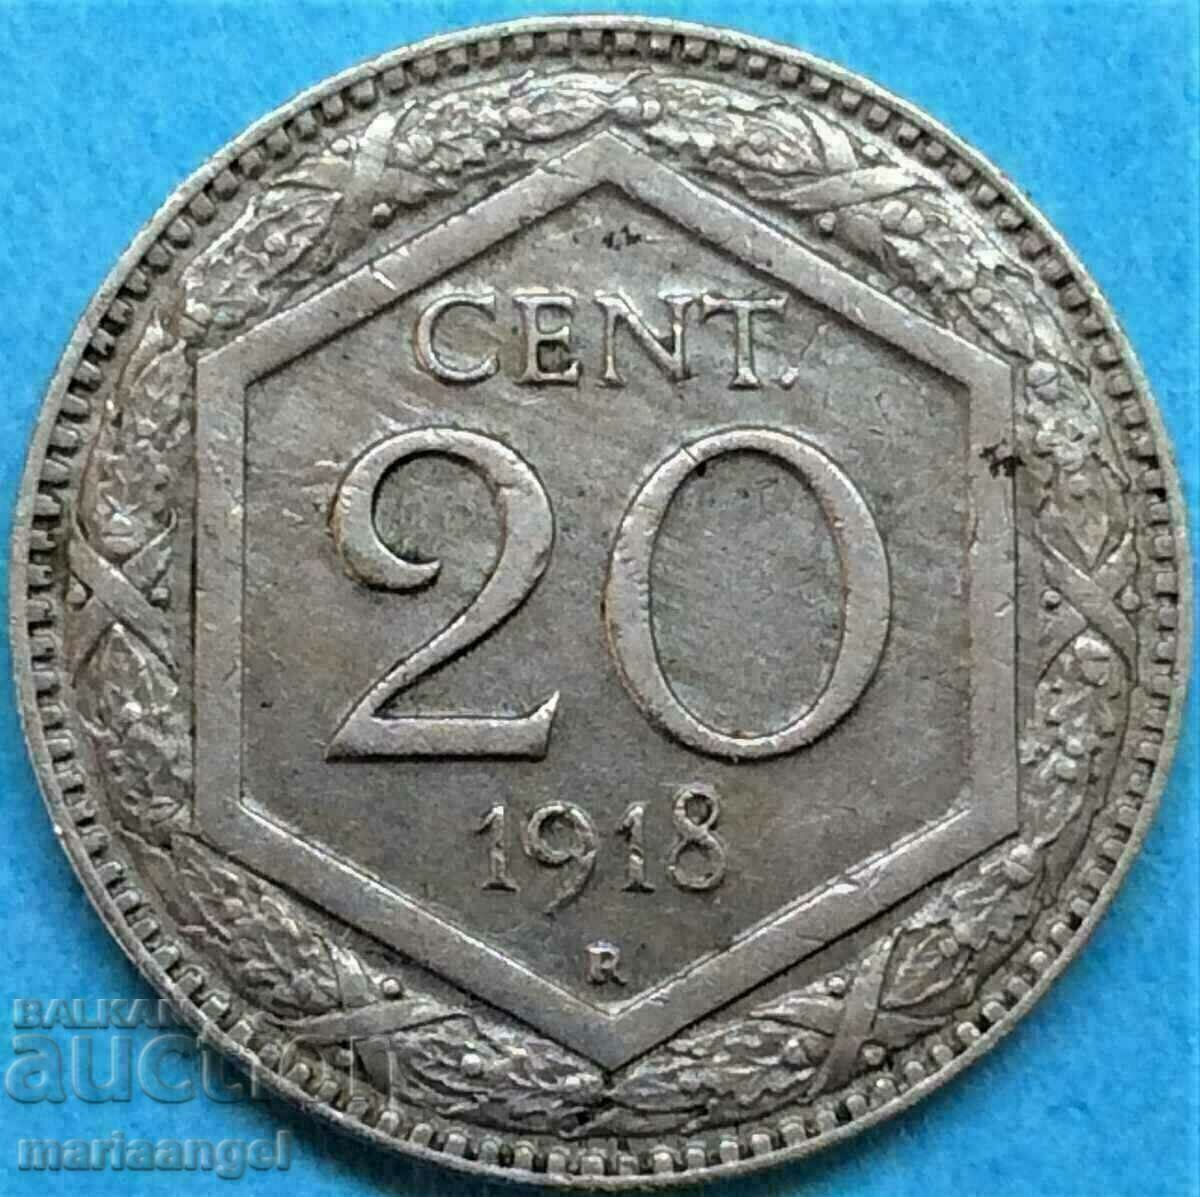 20 centesimi 1918 Italy - quite rare